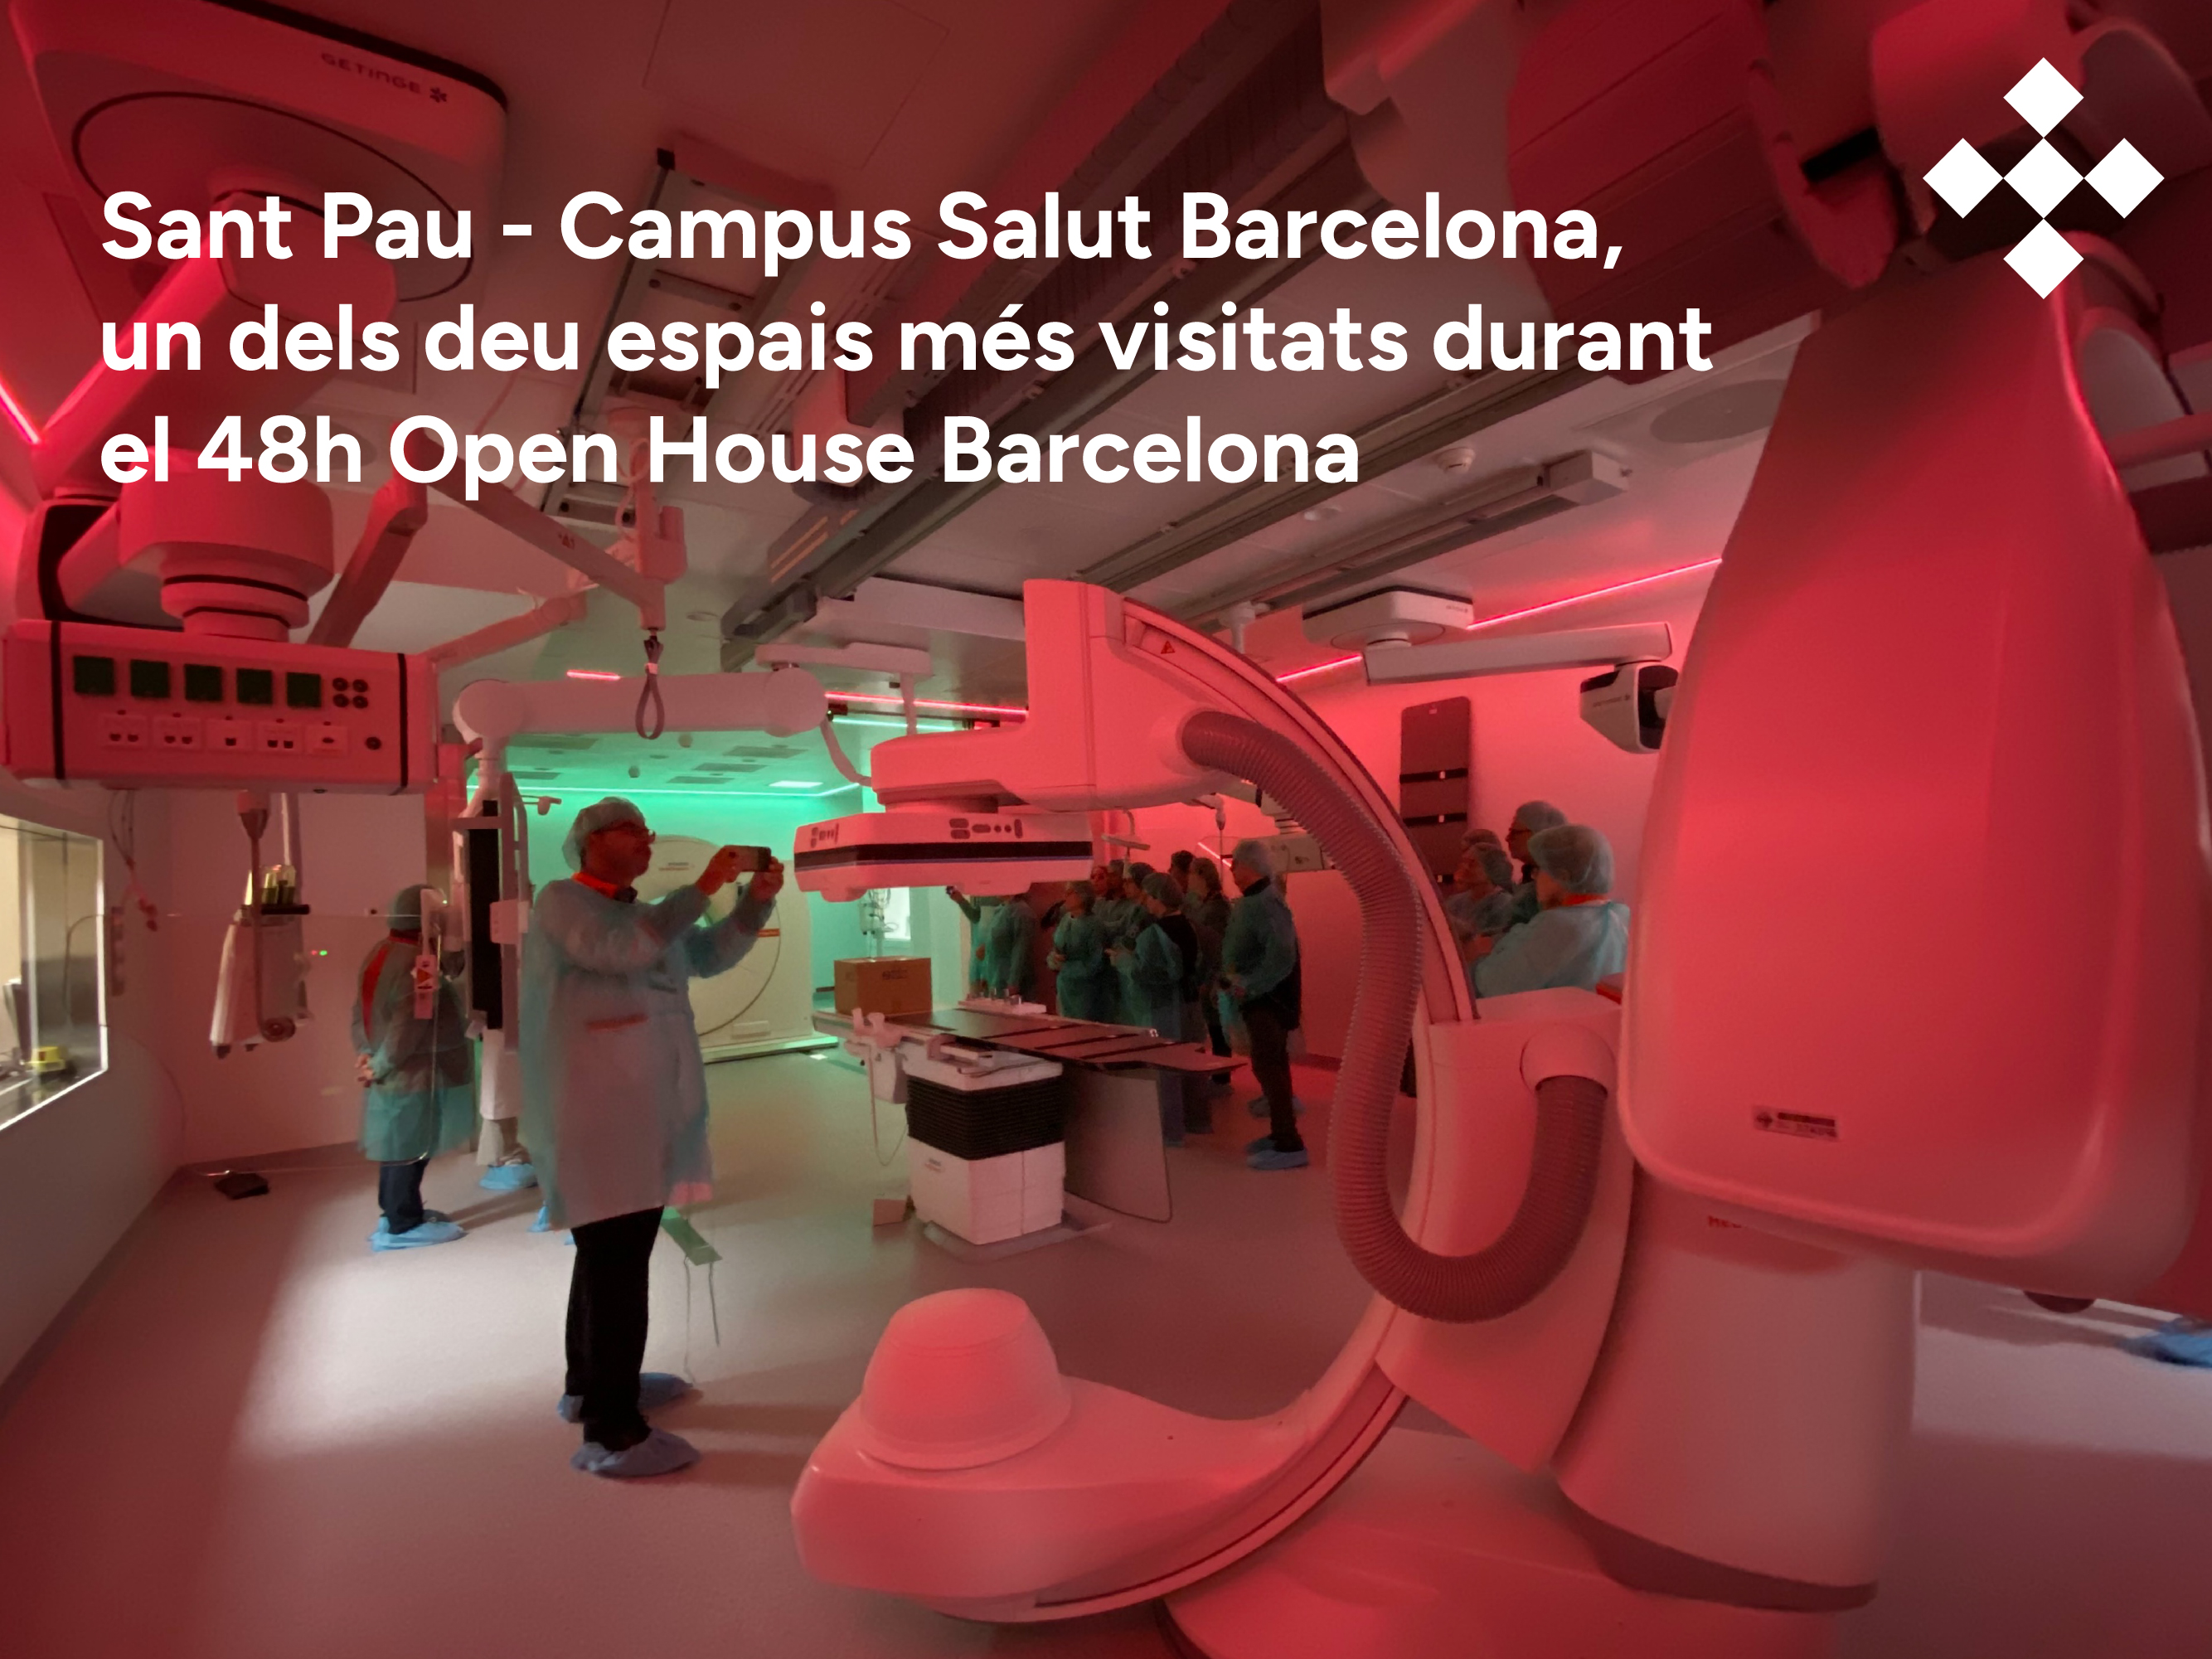 Amb 3.939 persones, Sant Pau - Campus Salut Barcelona ha estat un dels deu espais més visitats durant el 48h Open House Barcelona.